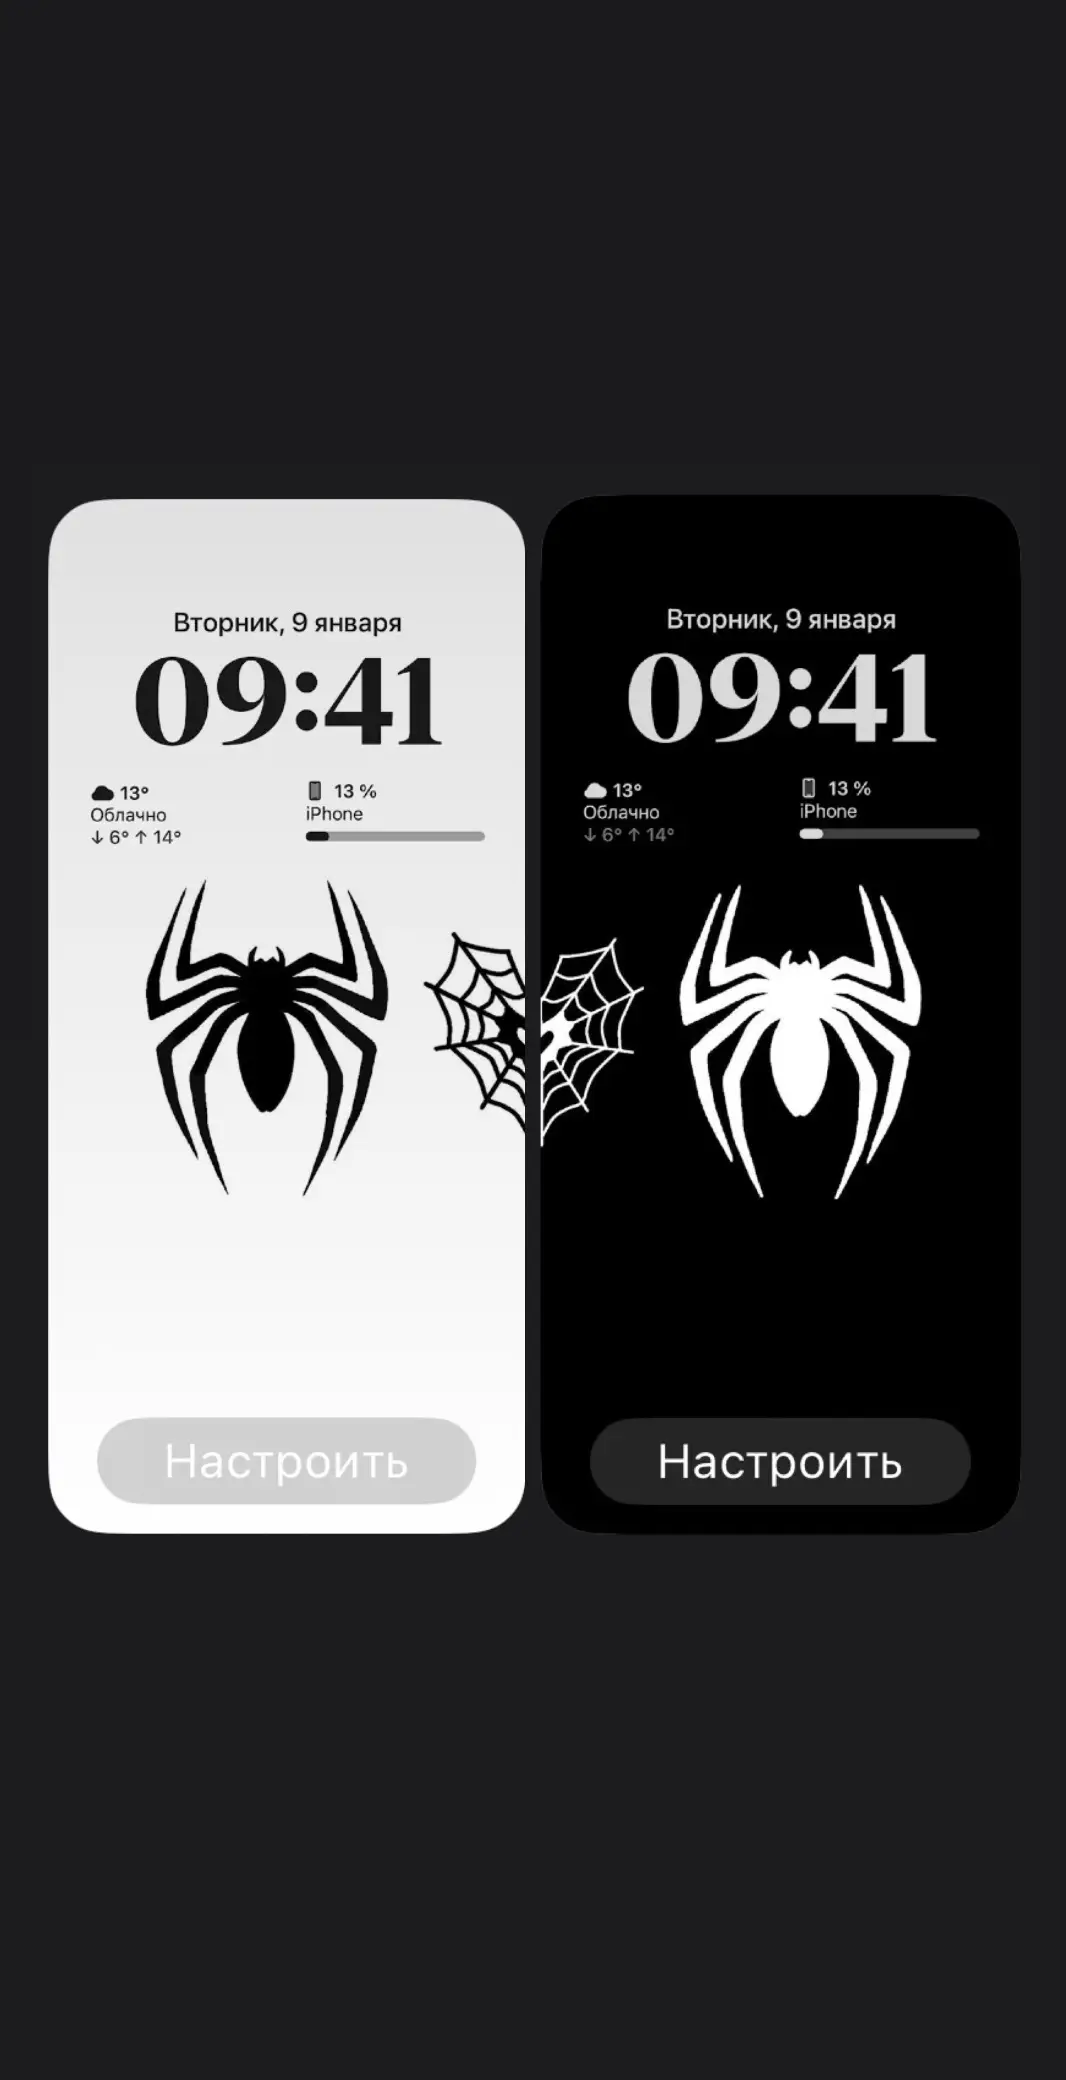 #обоинателефон #обои #wallpaper #spiderman #человекпаук 